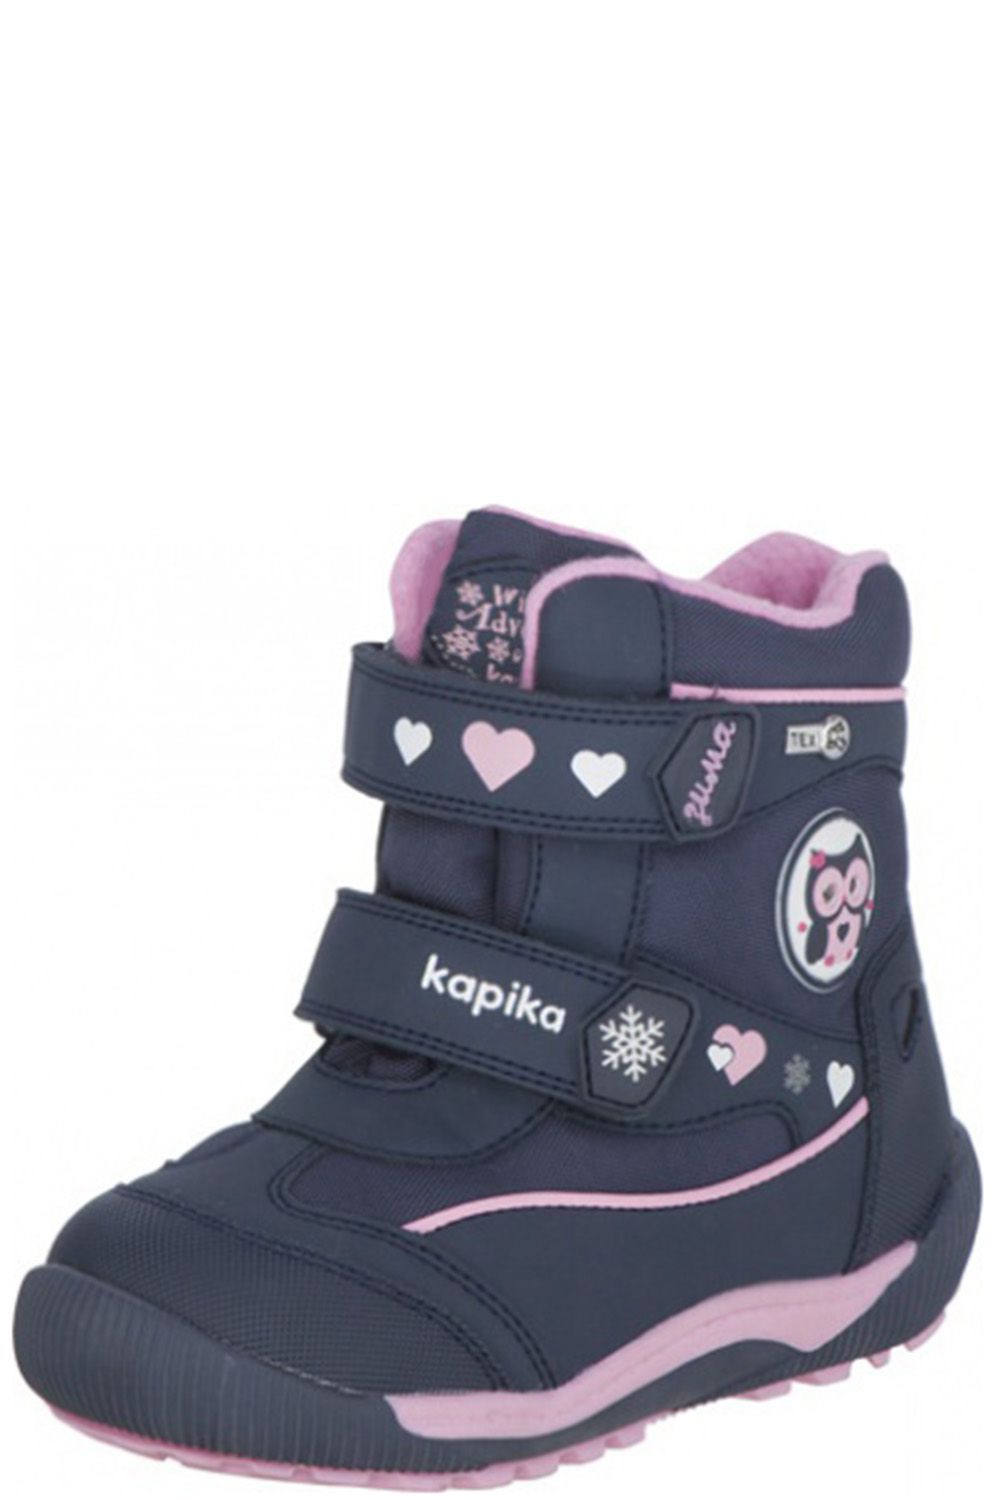 Ботинки Kapika, размер 24, цвет синий